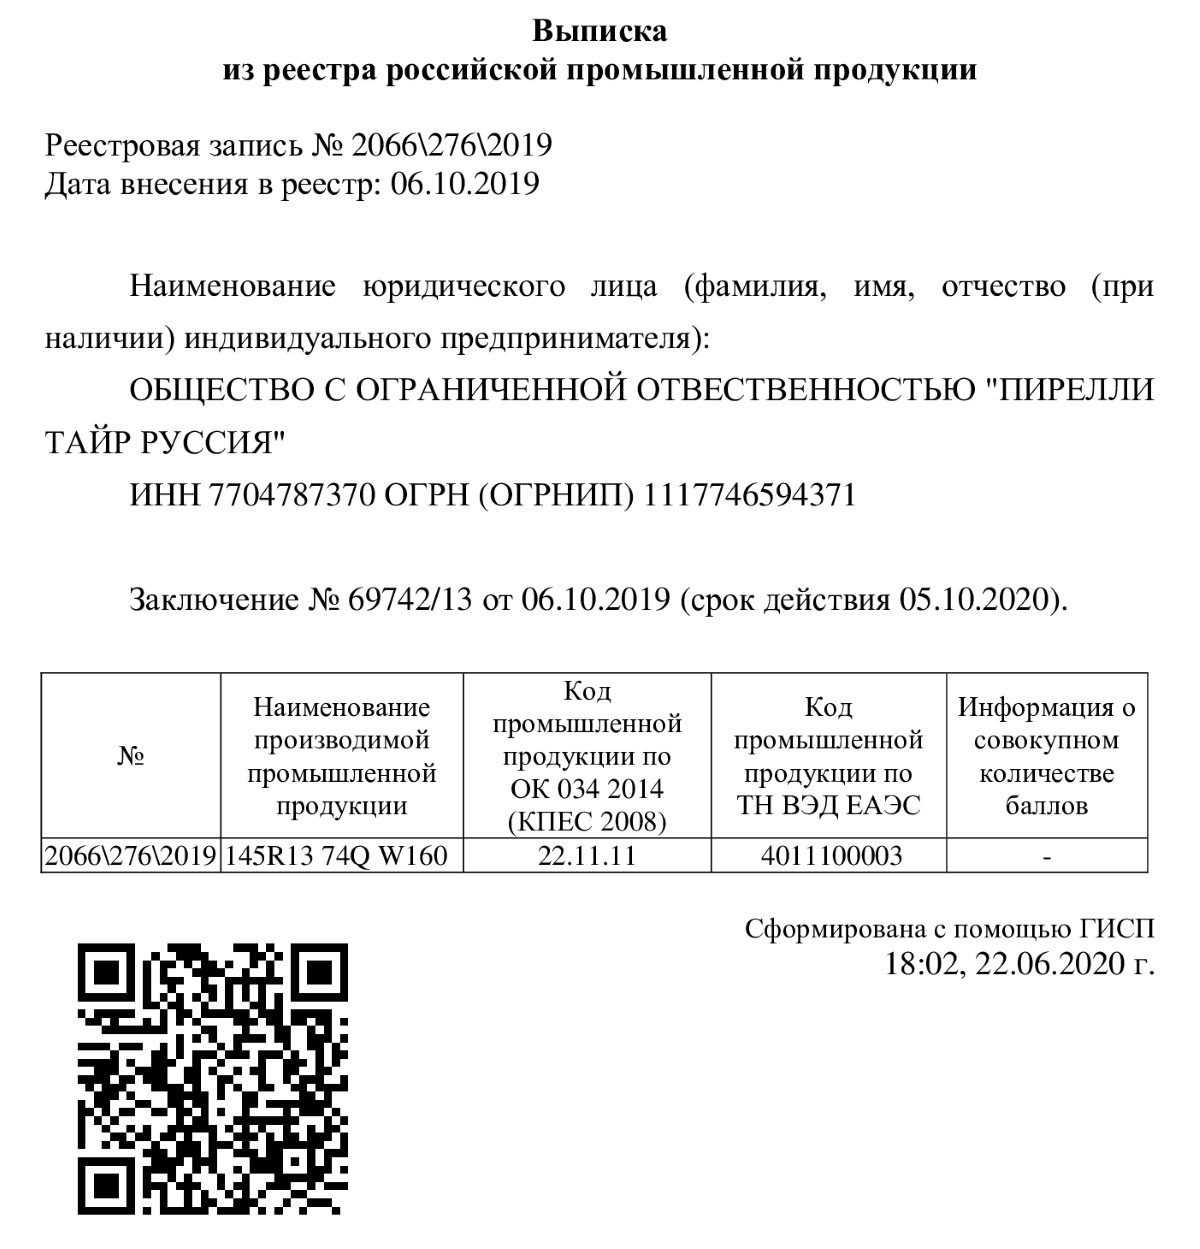 Образец выписки из реестра российской промышленной продукции